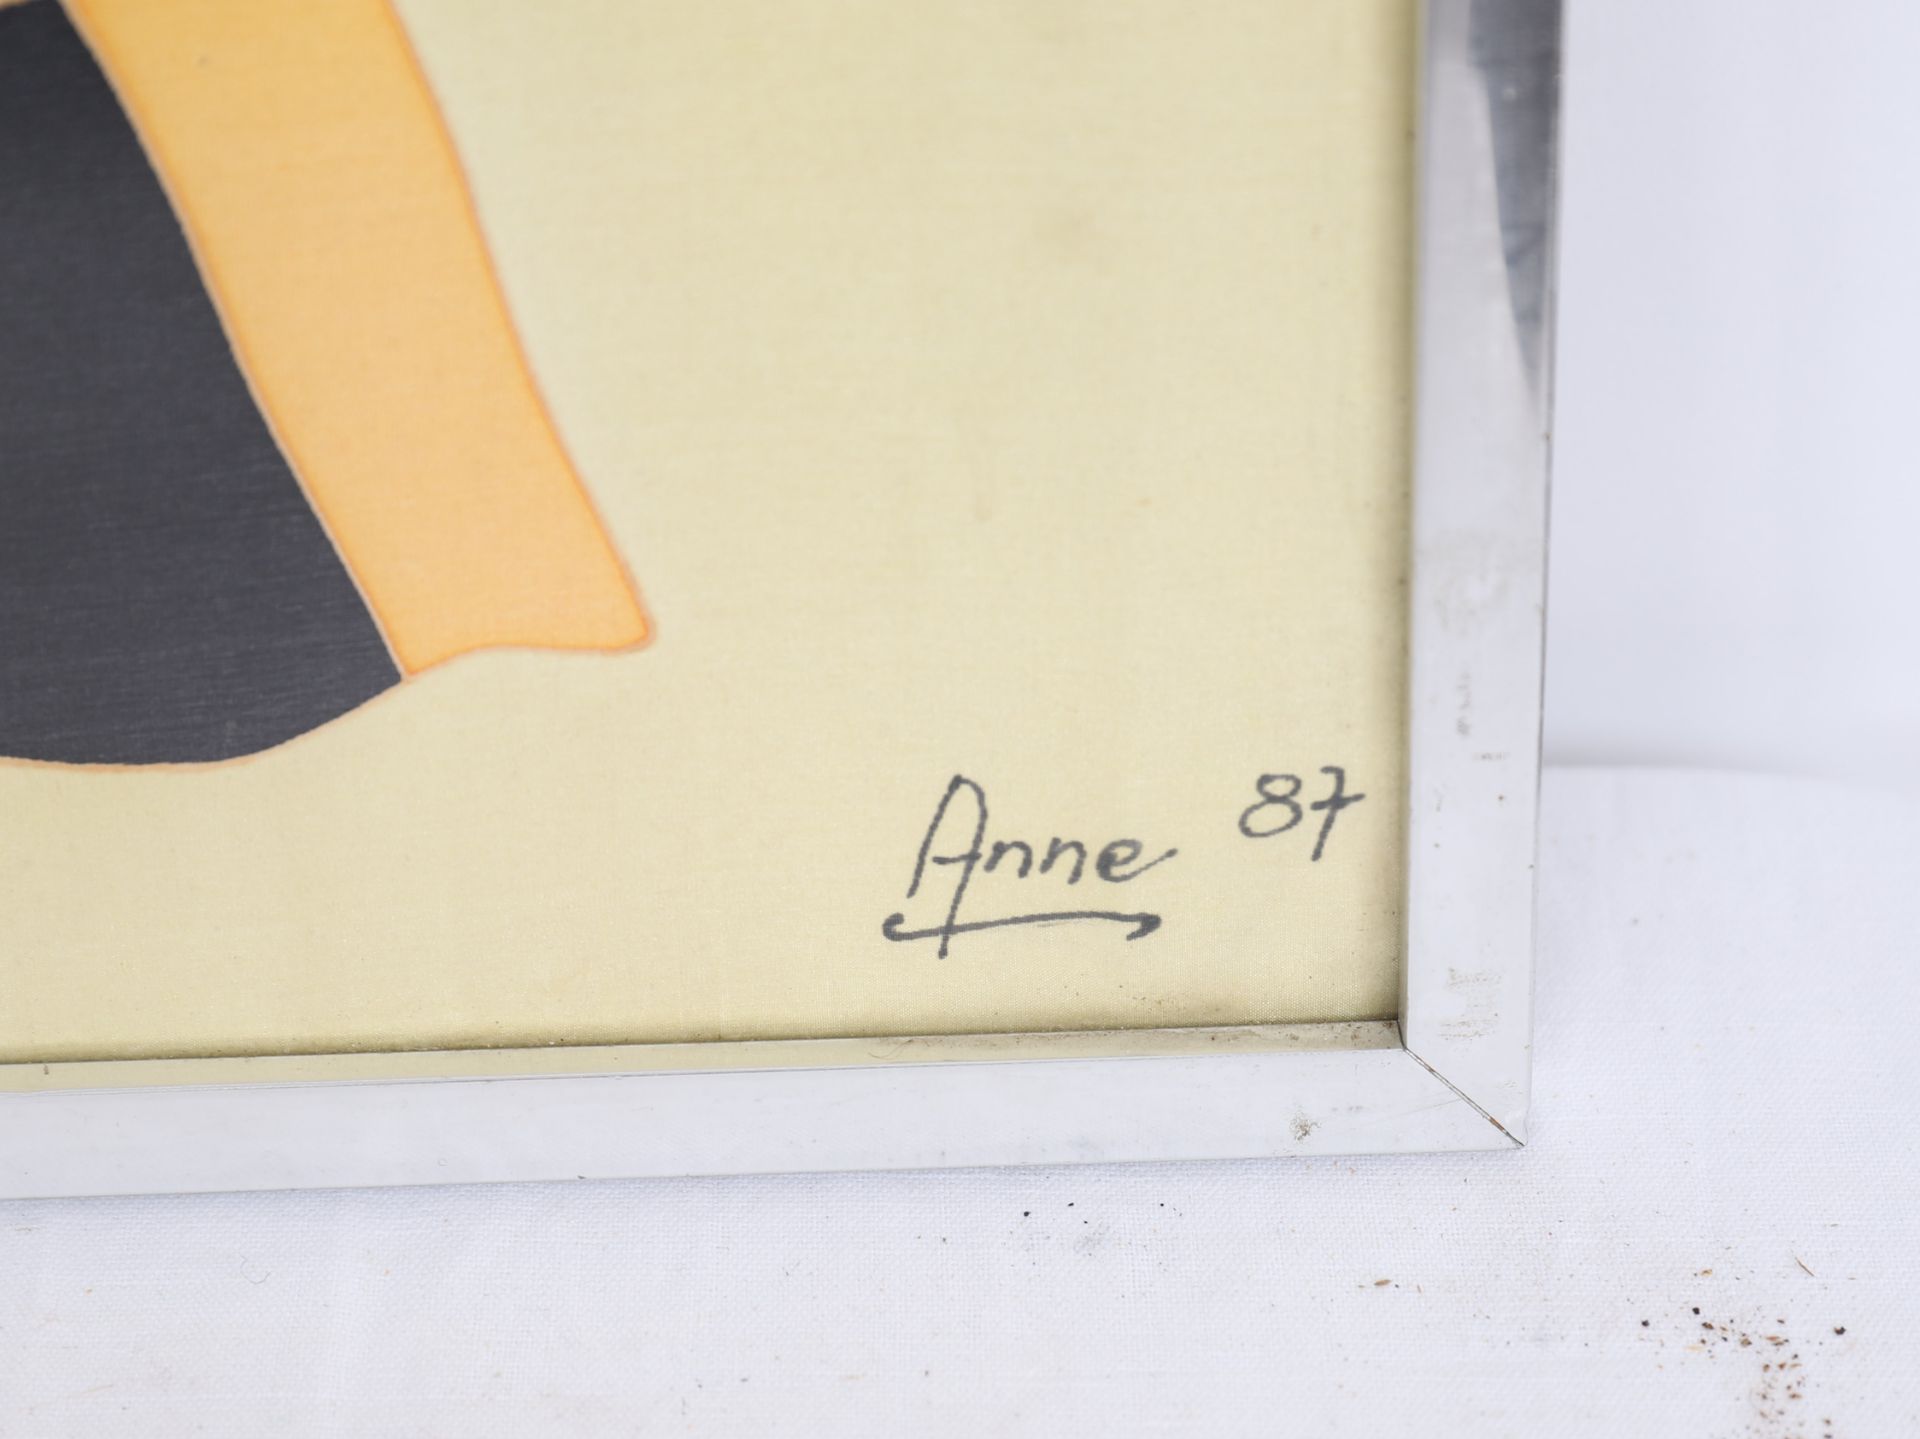 TABLEAU SUR SOIE "CLOWN SALUANT" 1987 DE ANNE Peinture sur soie, signée et datée [...] - Bild 2 aus 3